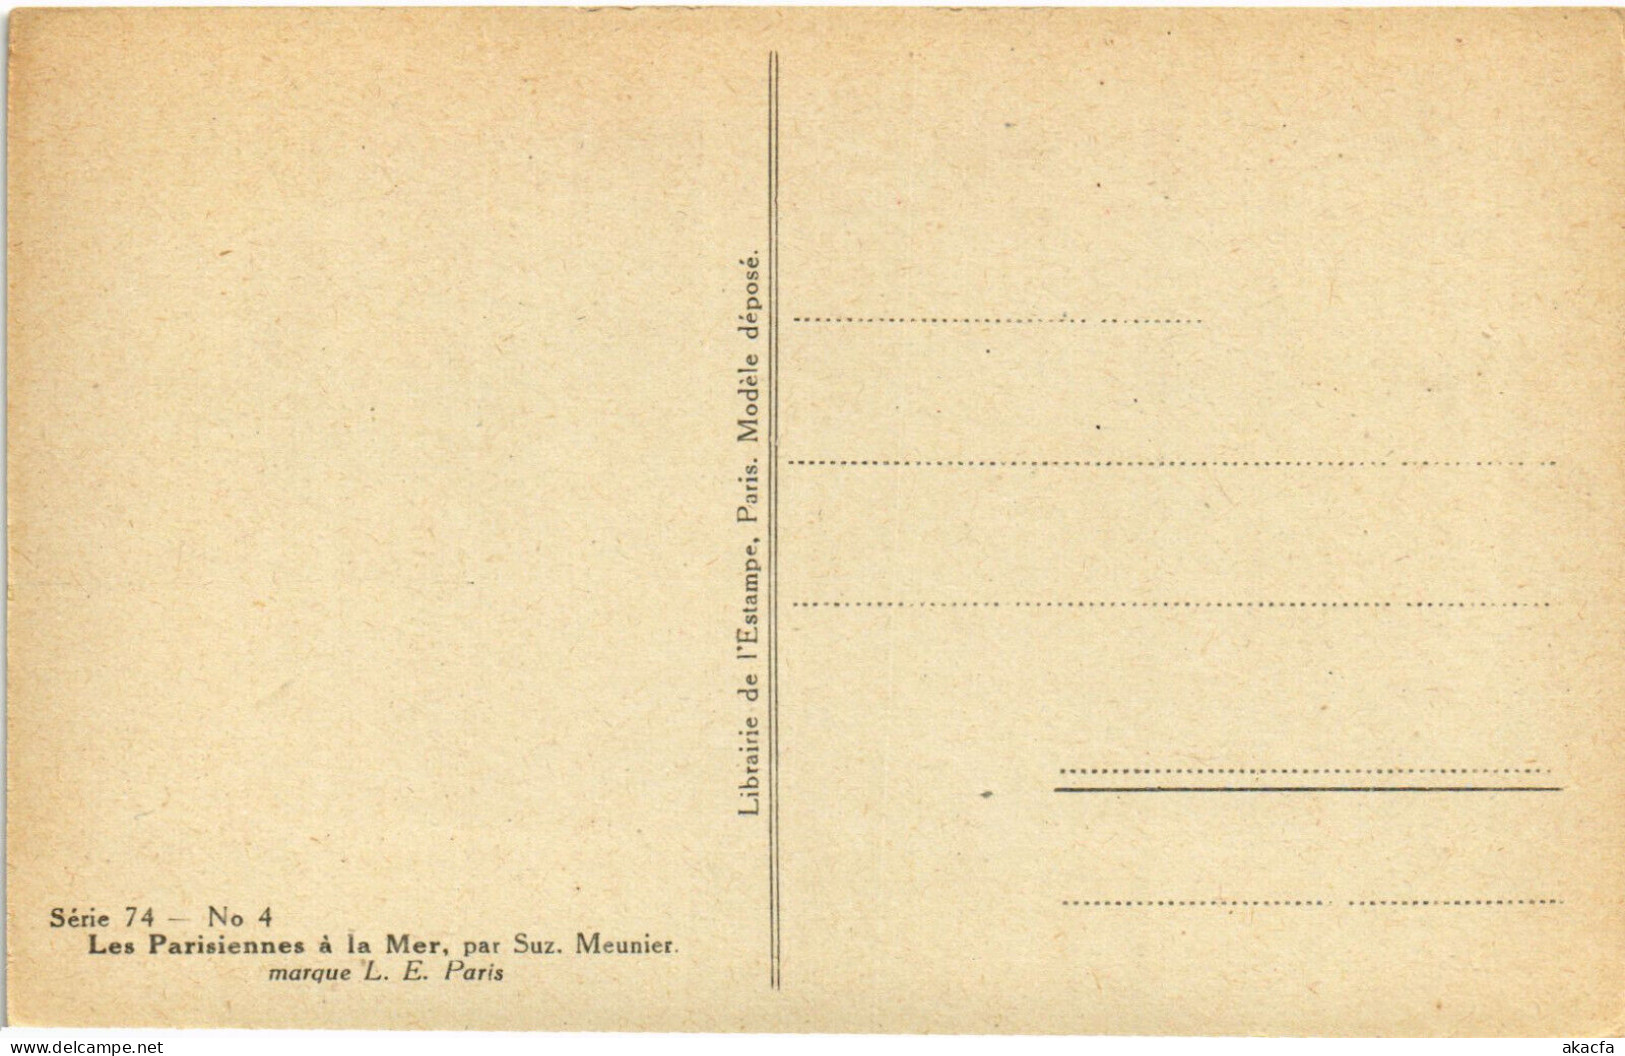 PC ARTIST SIGNED, MEUNIER, LES LARISIENNE A LA MER, Vintage Postcard (b51675) - Meunier, S.